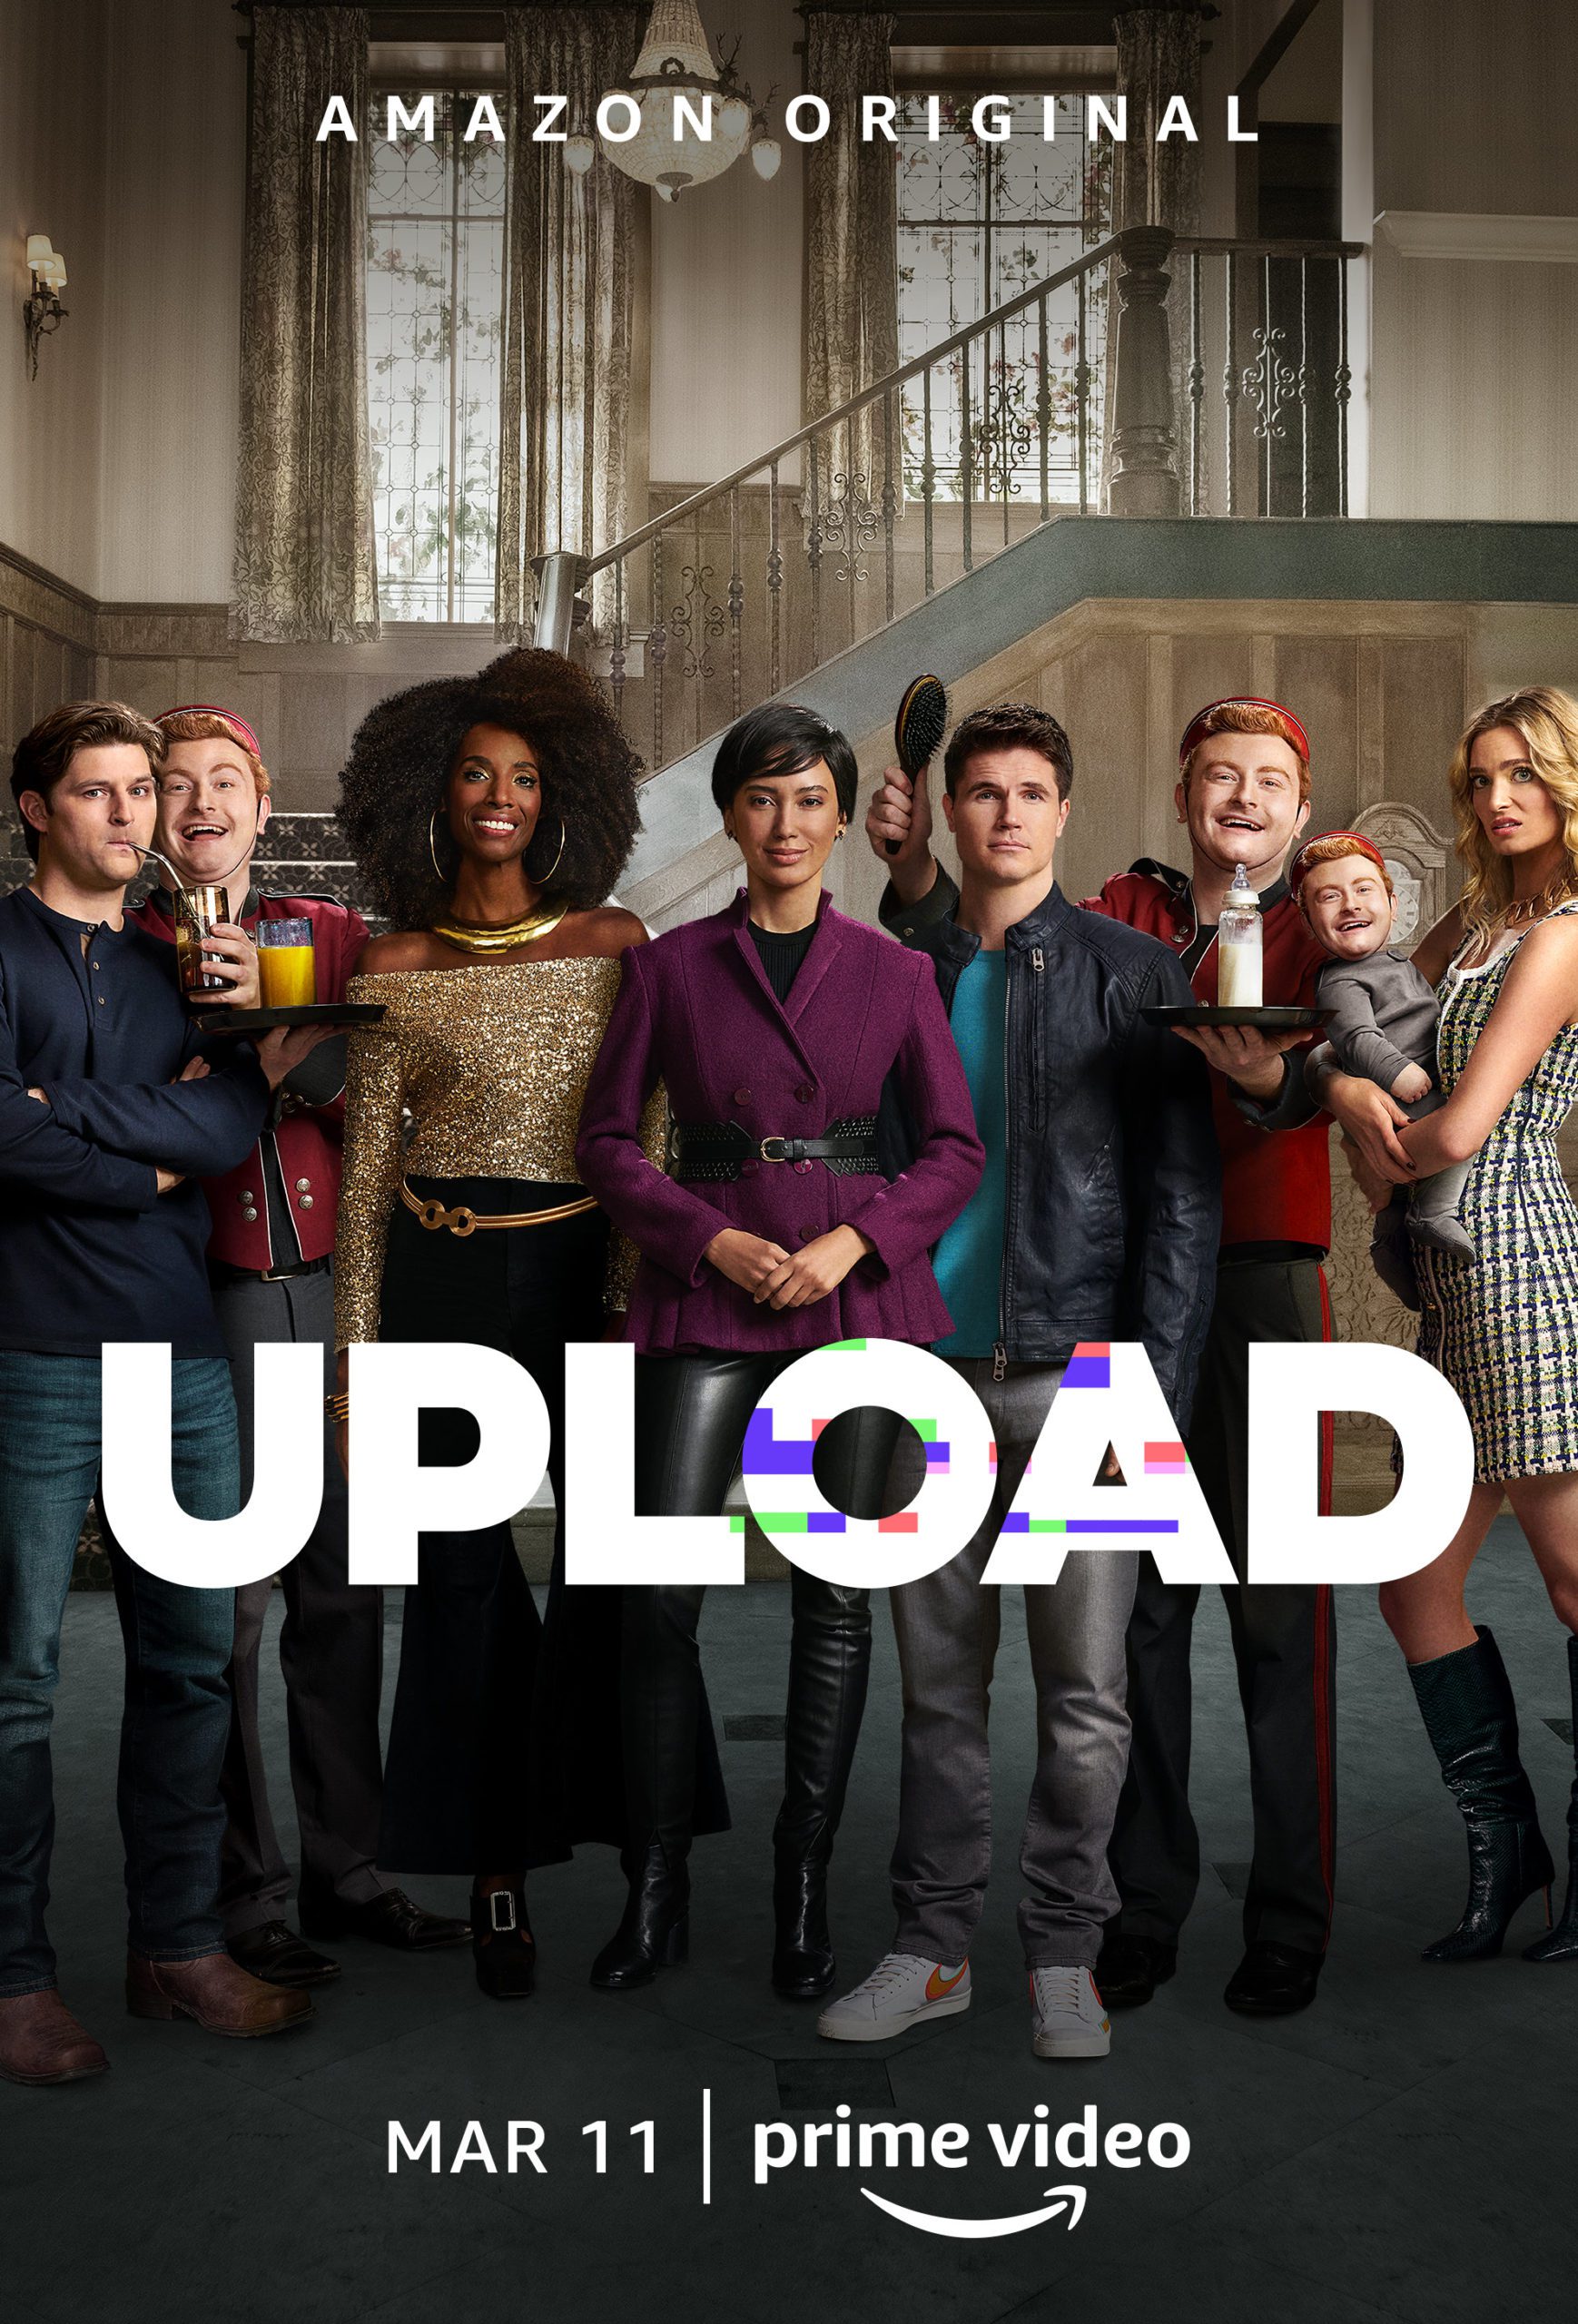 Zweite Staffel der Comedy-Serie "Upload" startet am 11. März